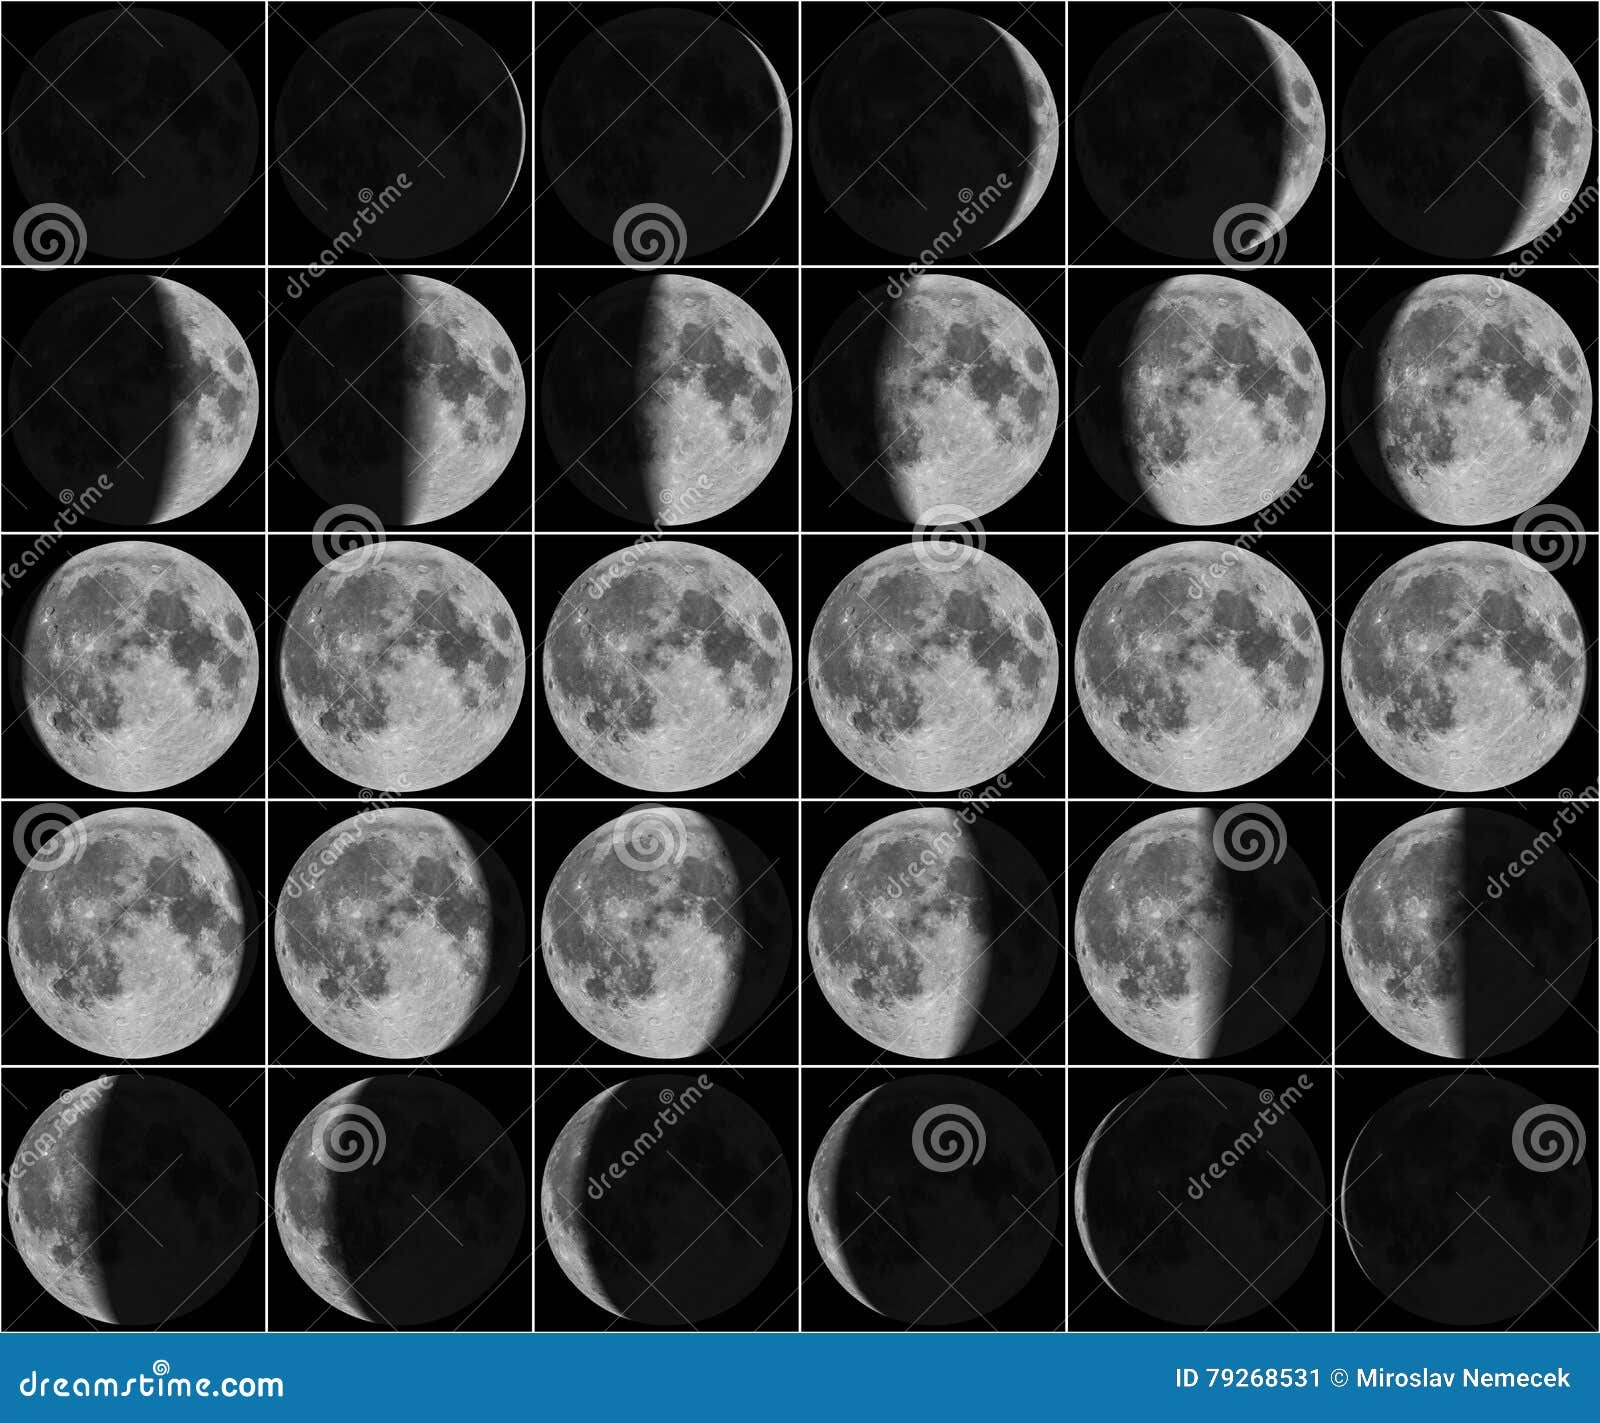 Лунный календарь 30 лунный день. Первая четверть Луны. Третья четверть Луны. Луна в разных фазах. Фаза Луны последняя четверть.